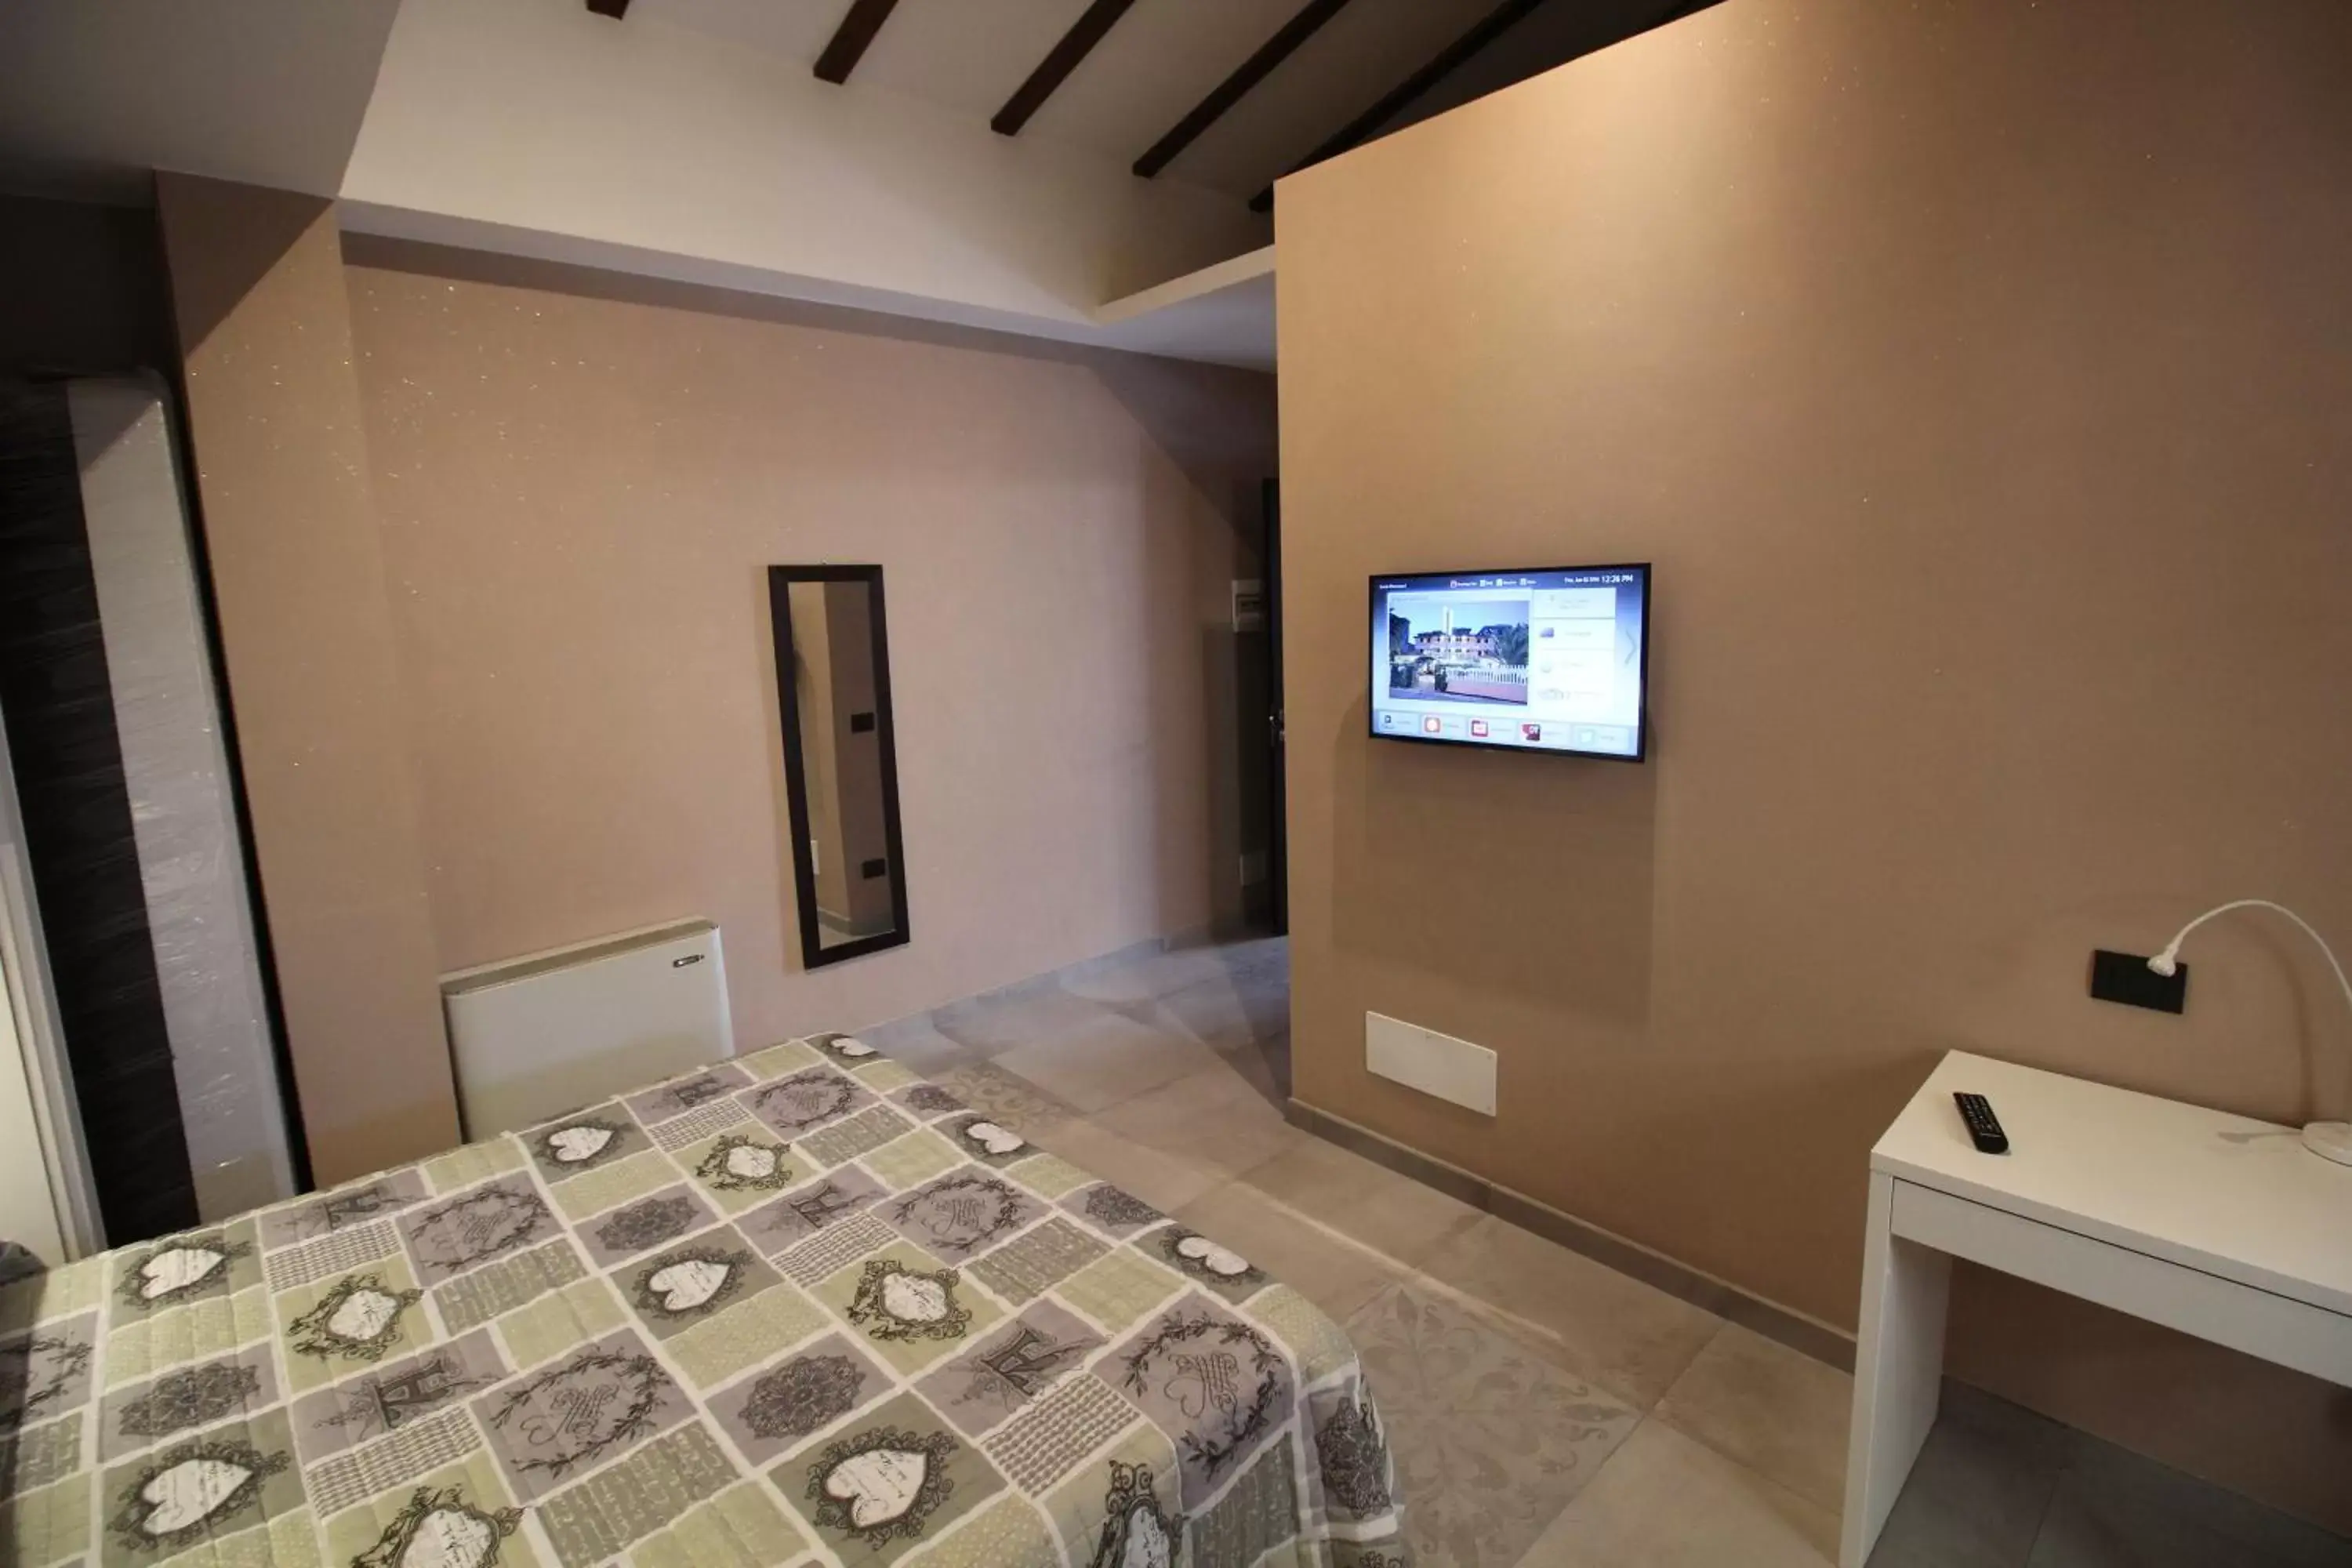 Bedroom, Room Photo in Del Prado